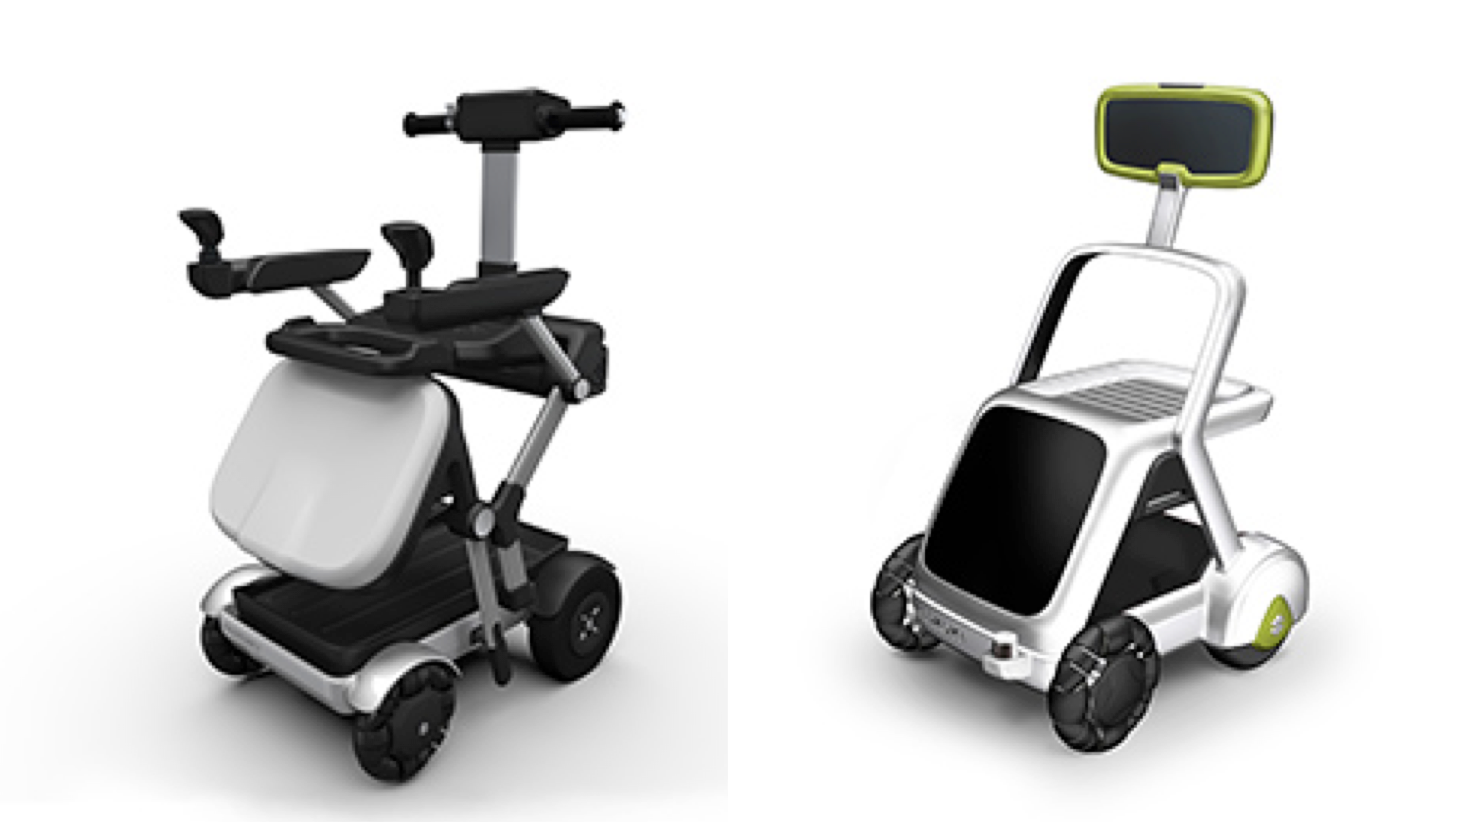 自動追従機能を備えた「MITORA」、電動車いすと歩行補助車の機能を持つ「KUPO」。スズキが2種の生活支援モビリティを公開